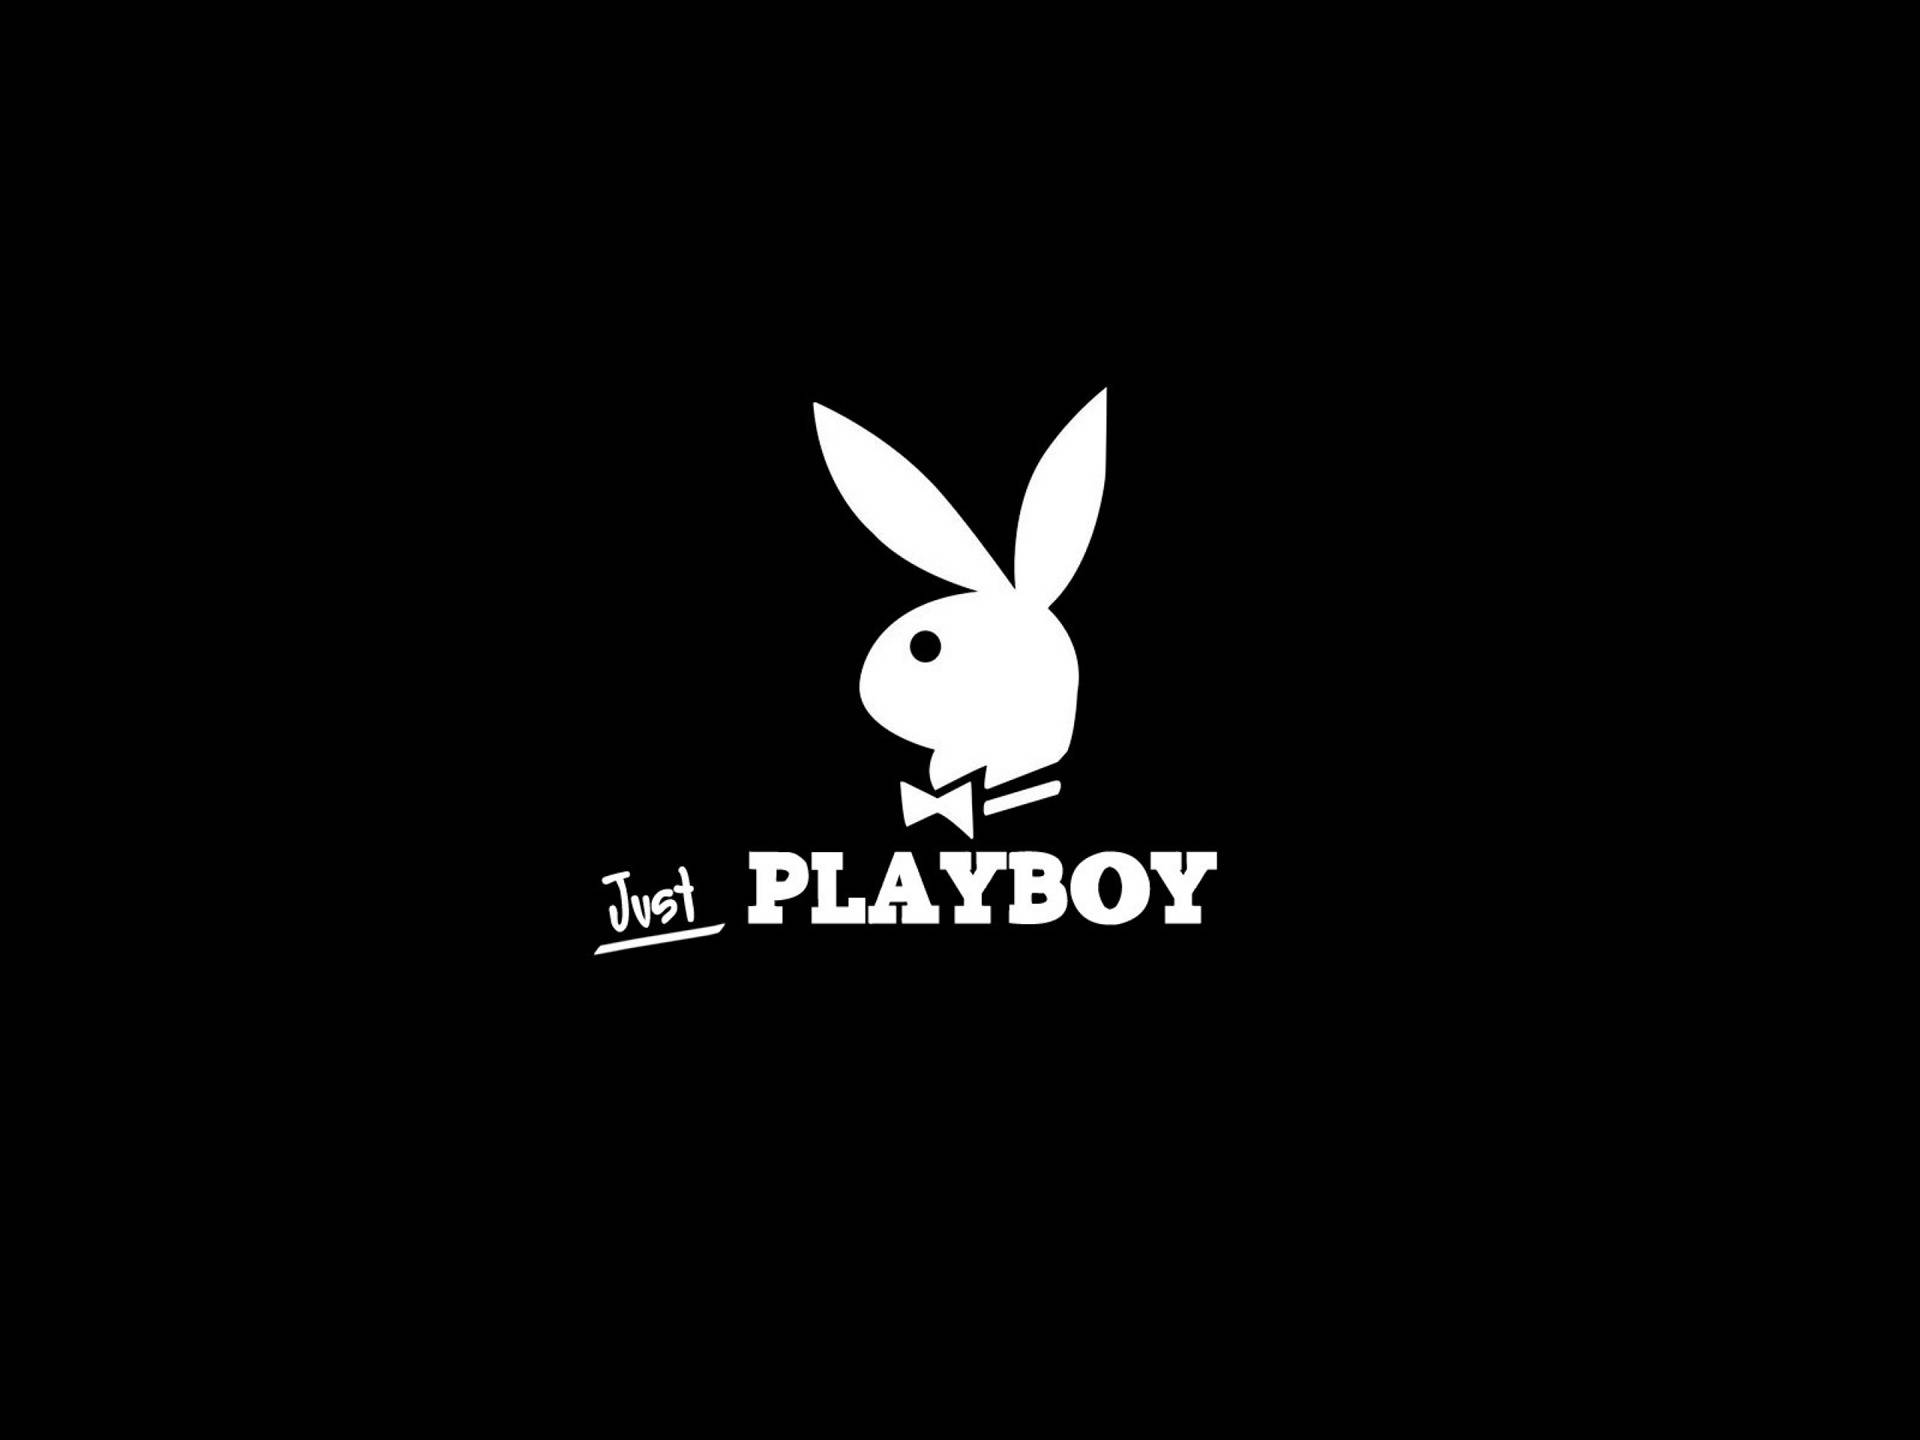 Playboy Background Photos